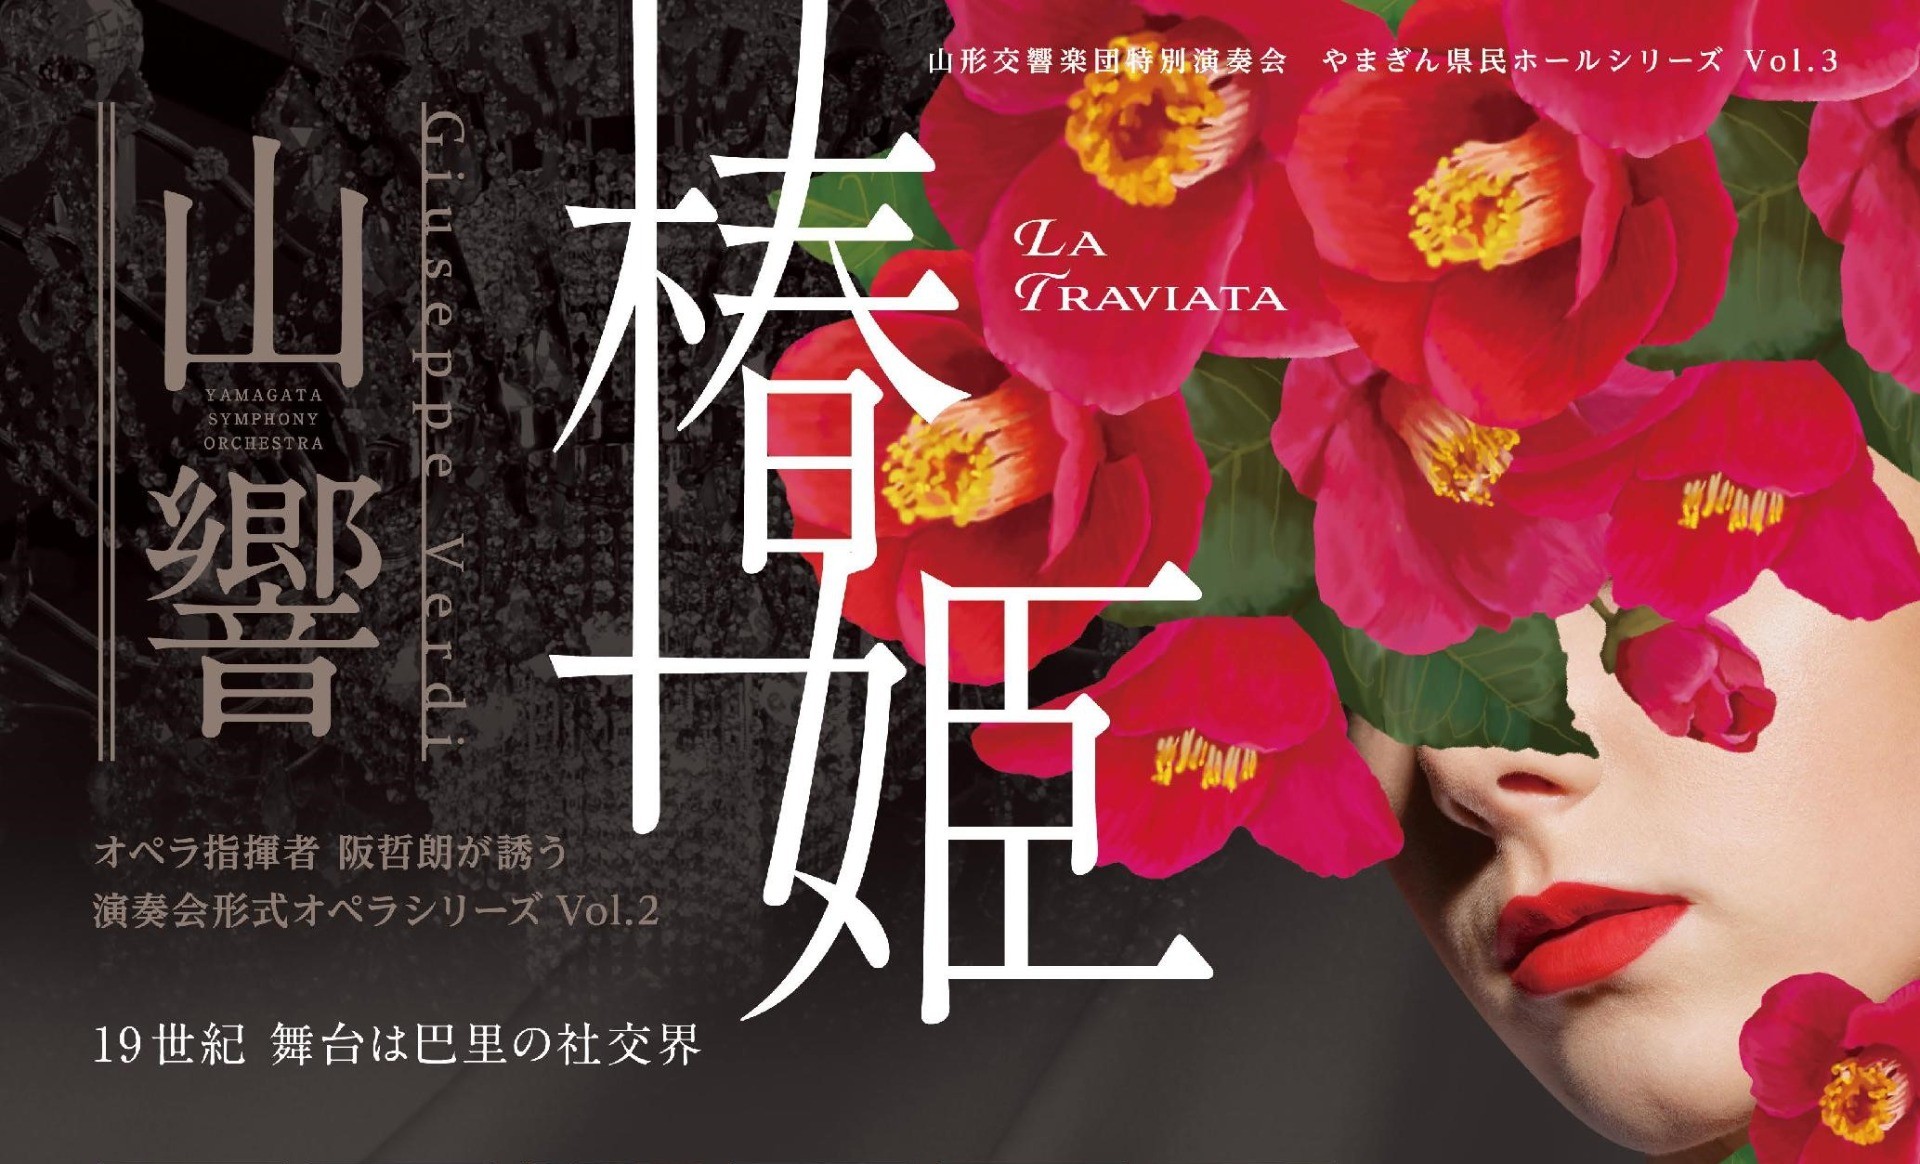 1/28「演奏会形式オペラシリーズVol.2 椿姫」一般発売のお知らせ